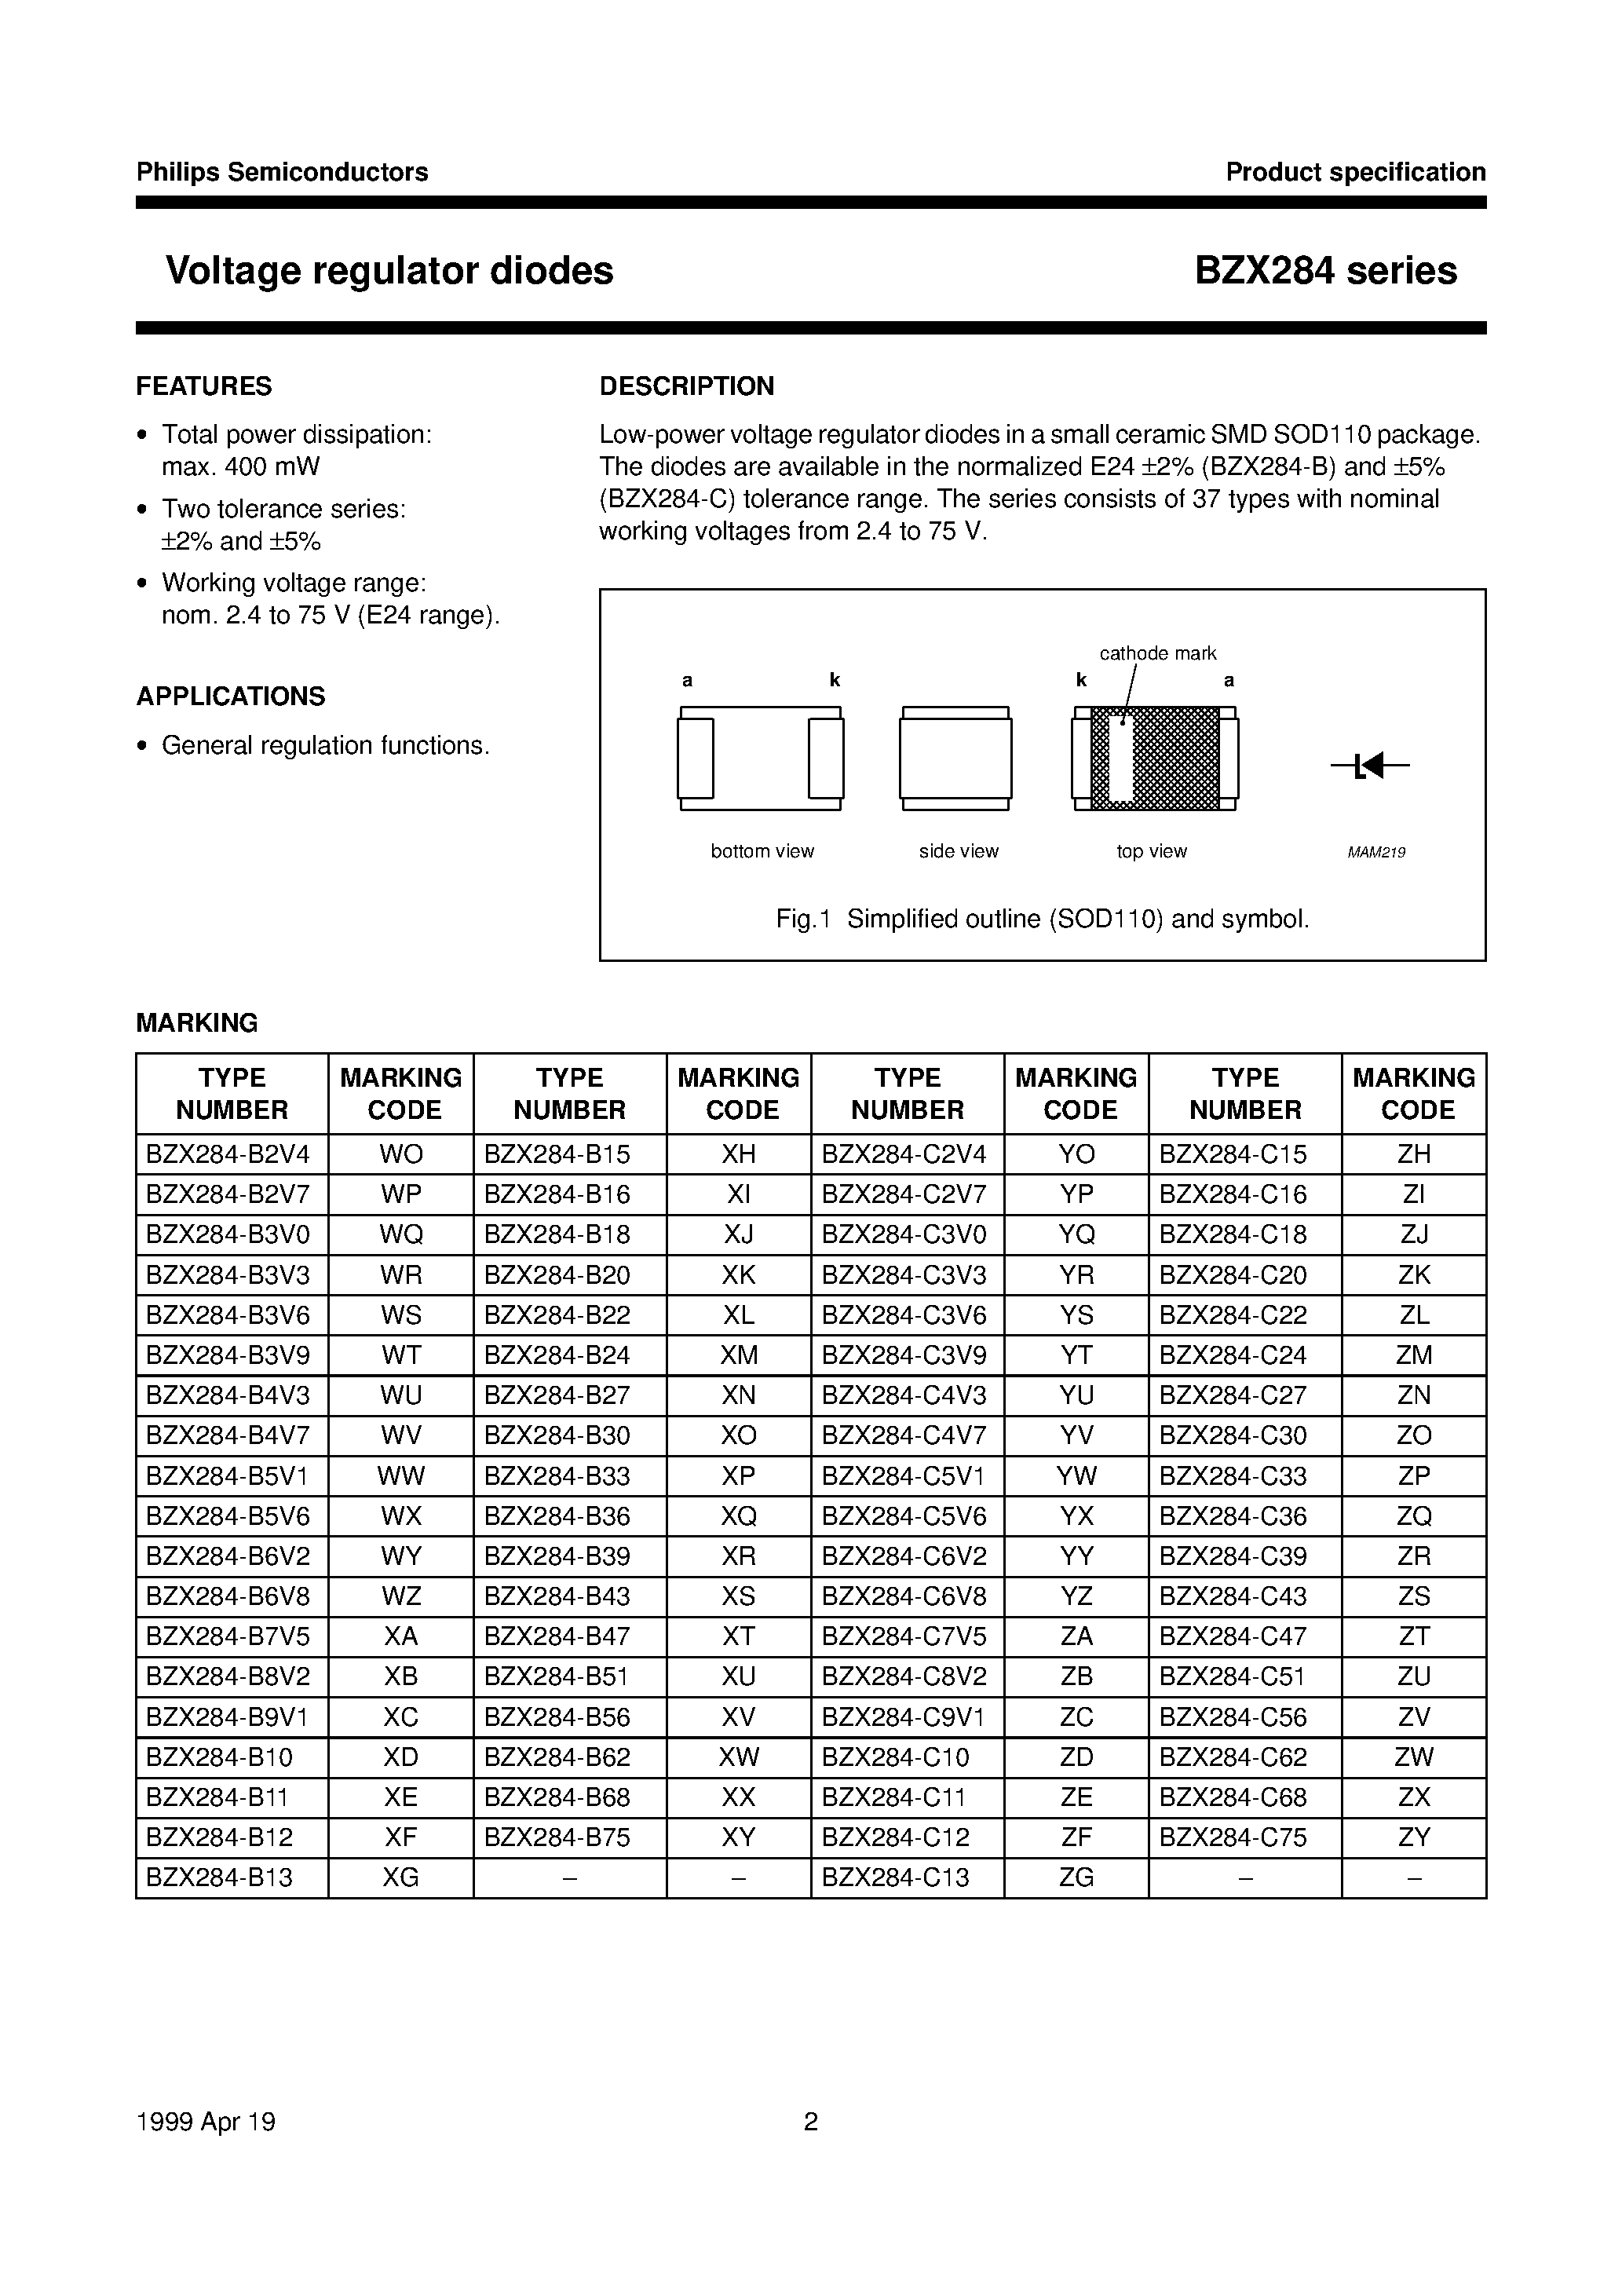 Datasheet BZX284-B62 - Voltage regulator diodes page 2